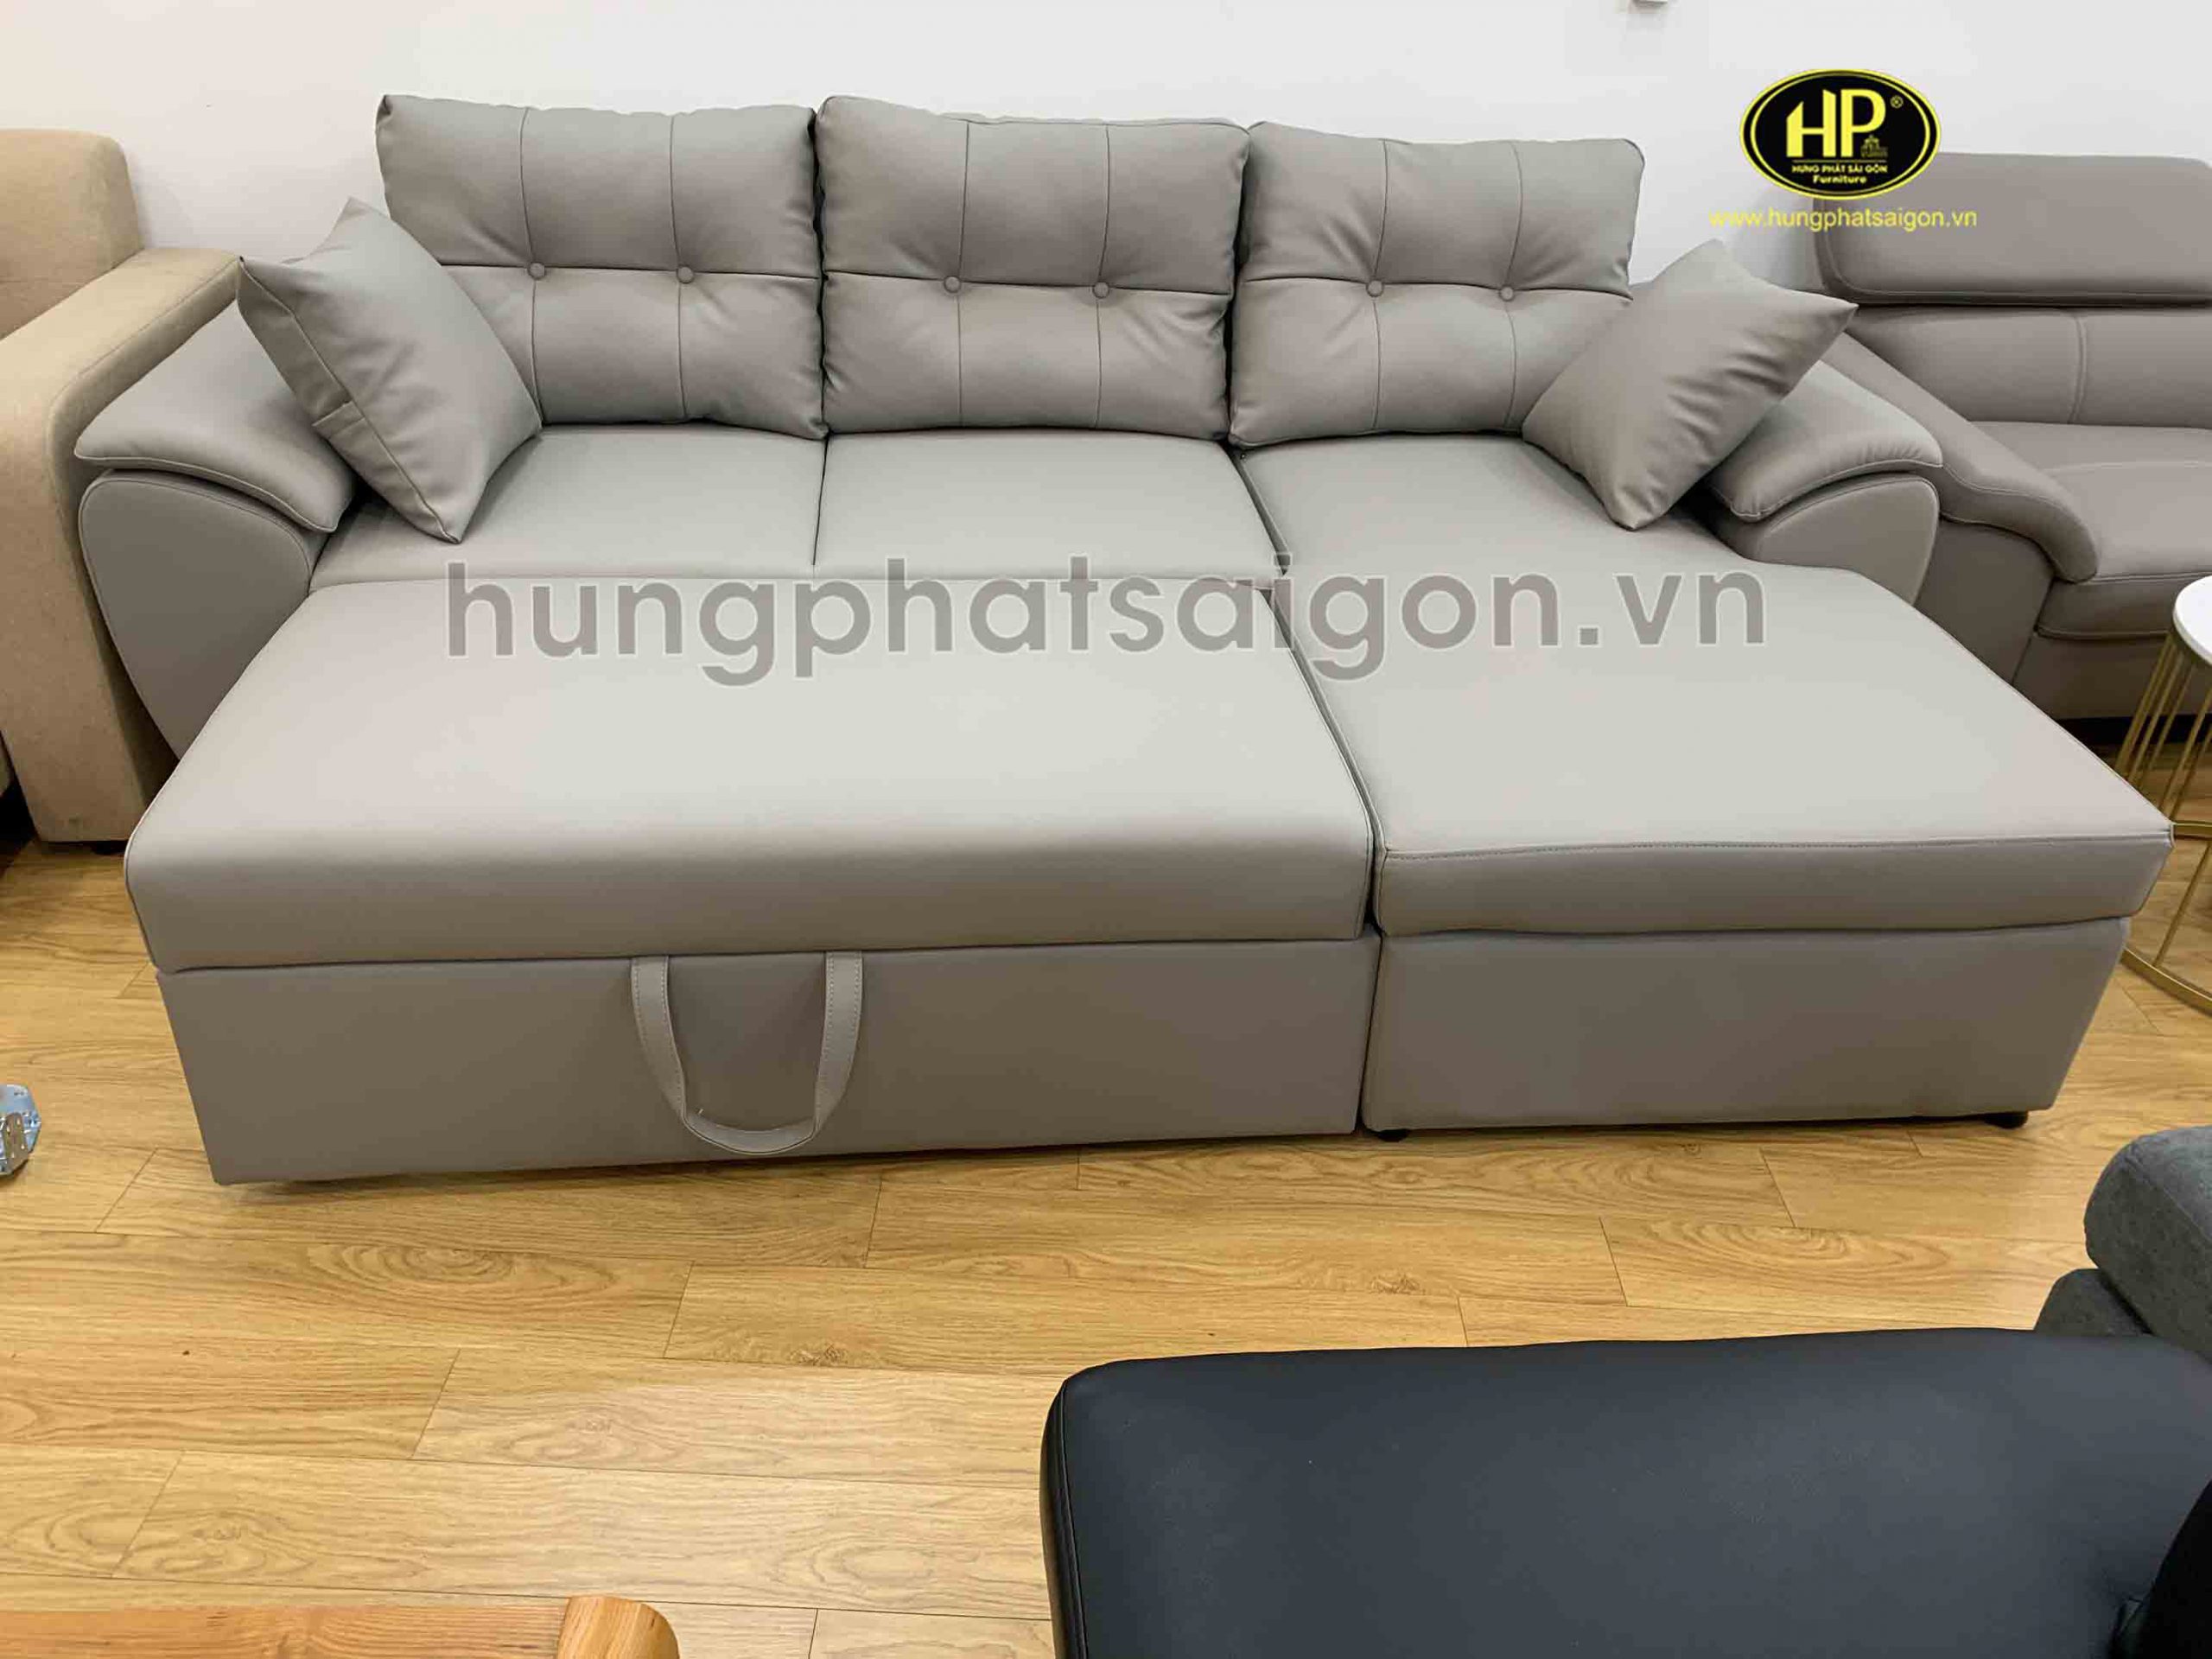 Ghế sofa giường kéo đa năng SG9-17